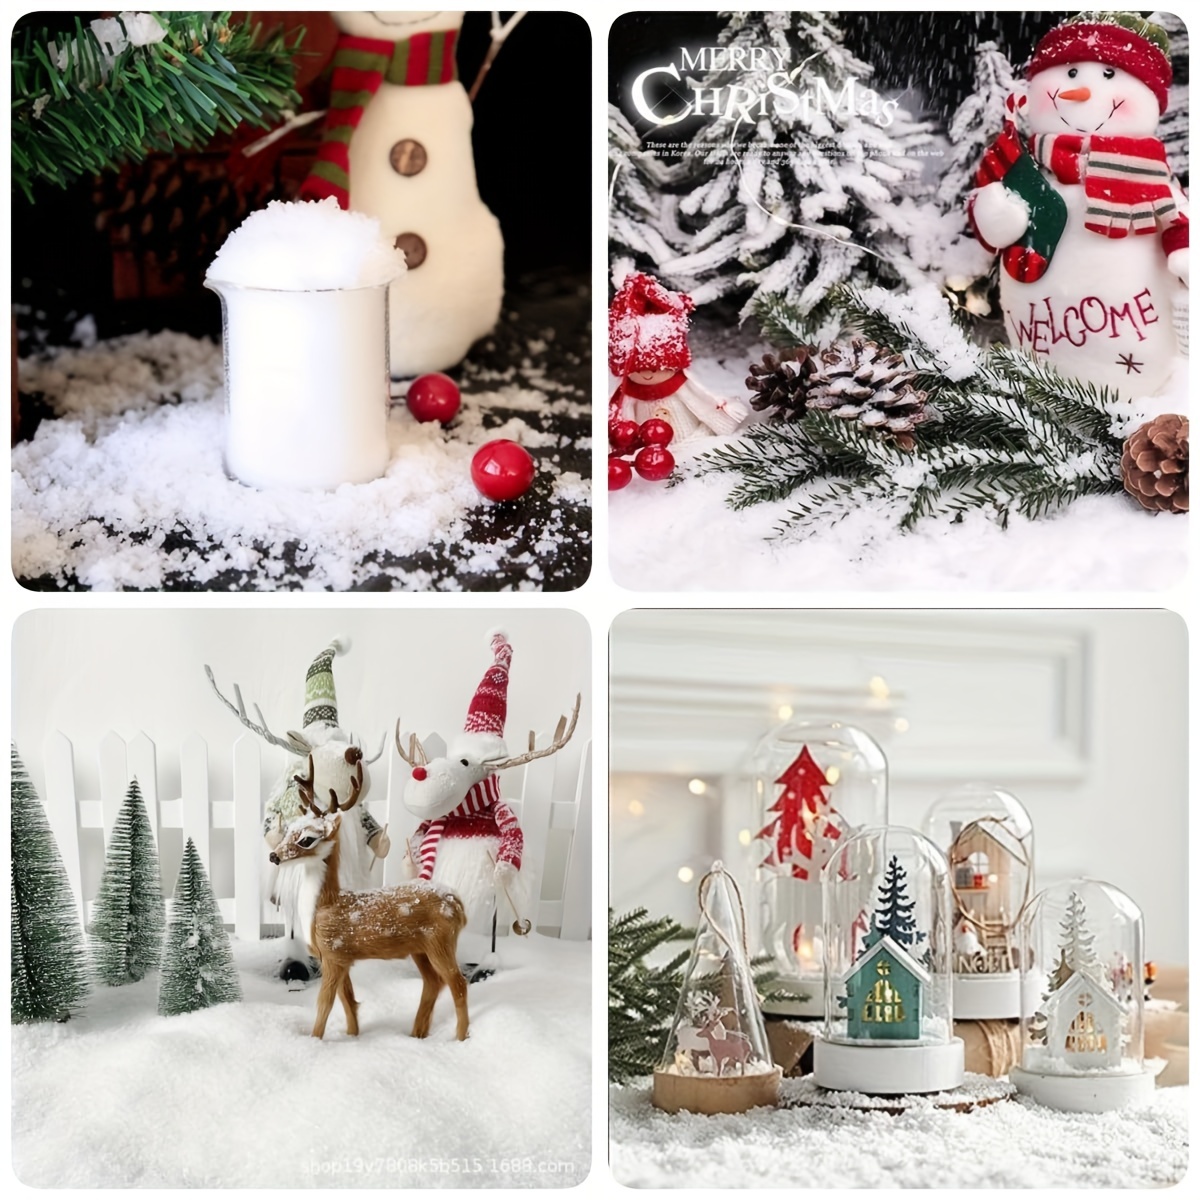  Decoración de nieve falsa de Navidad de 11.3 onzas, polvo de  nieve falsa con purpurina, fibra de nieve artificial esponjosa para  decoración de Navidad, decoración de Navidad, aldea, exhibición de  manualidades